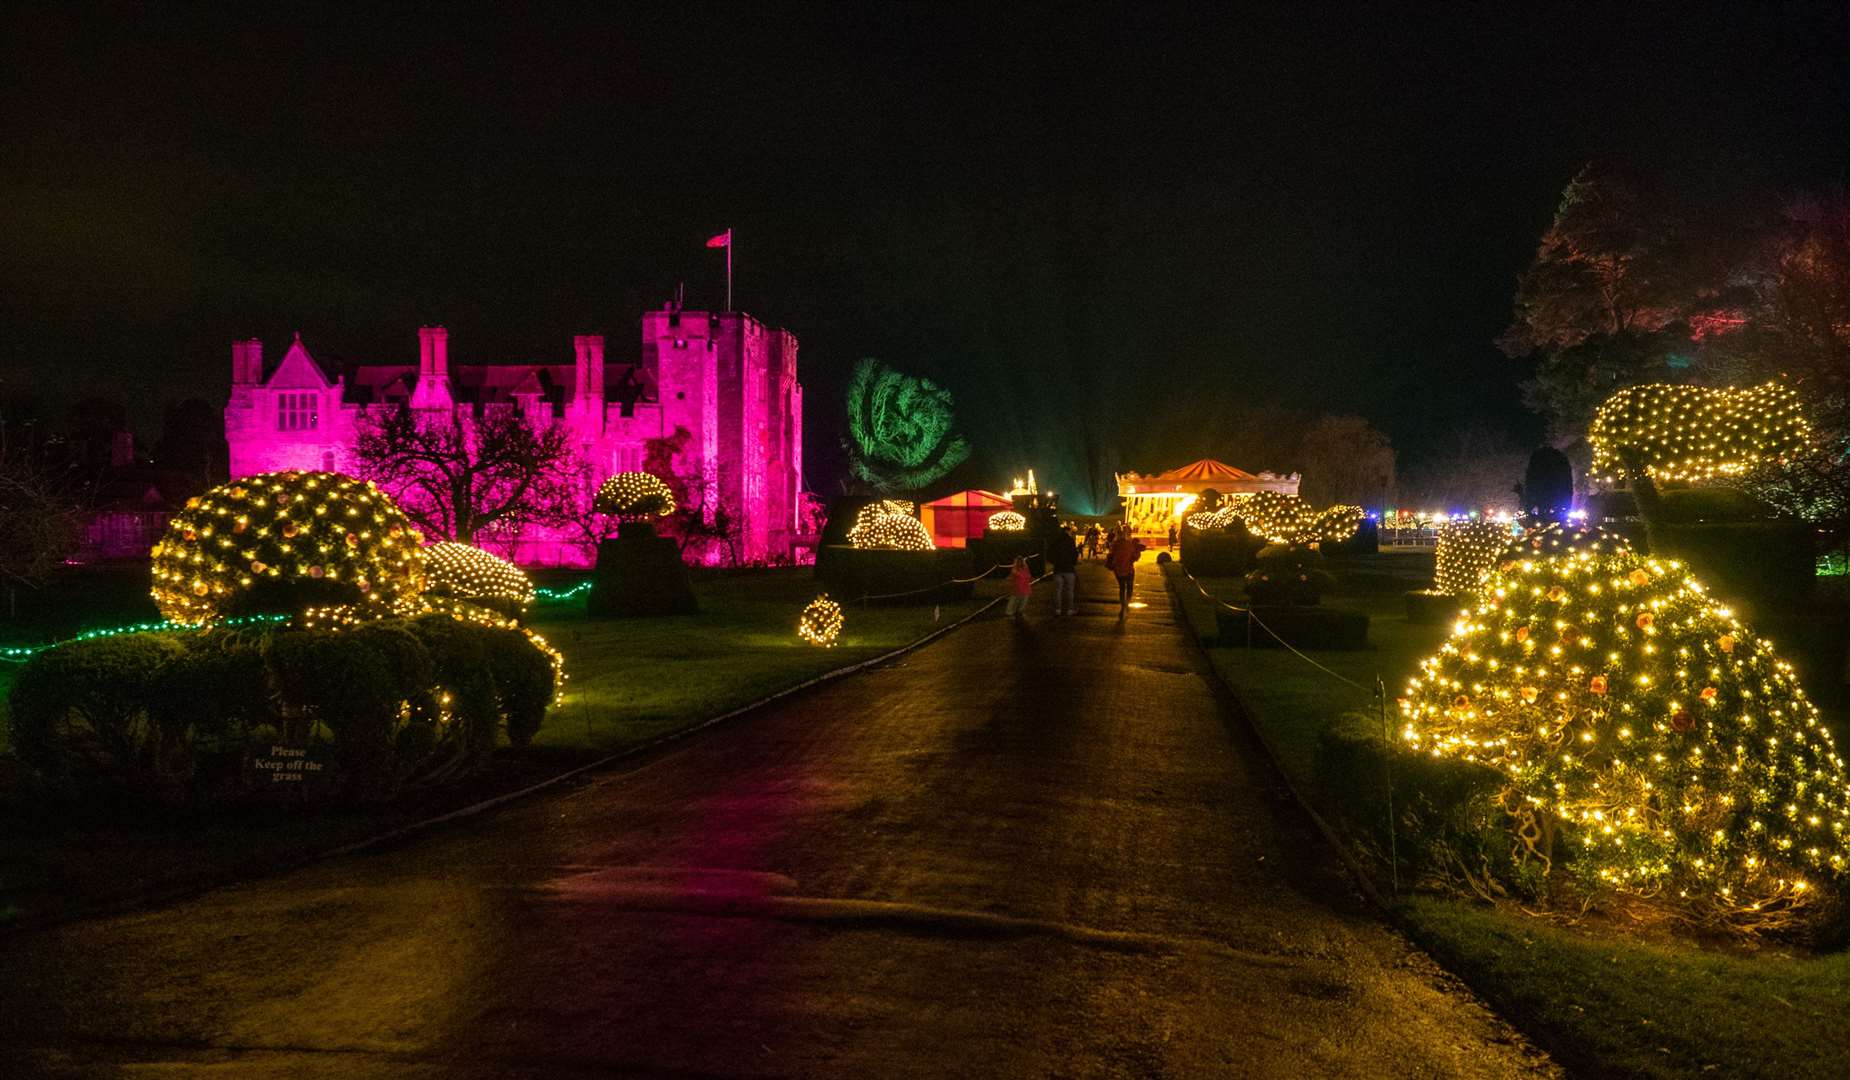 Hever Castle festive lights